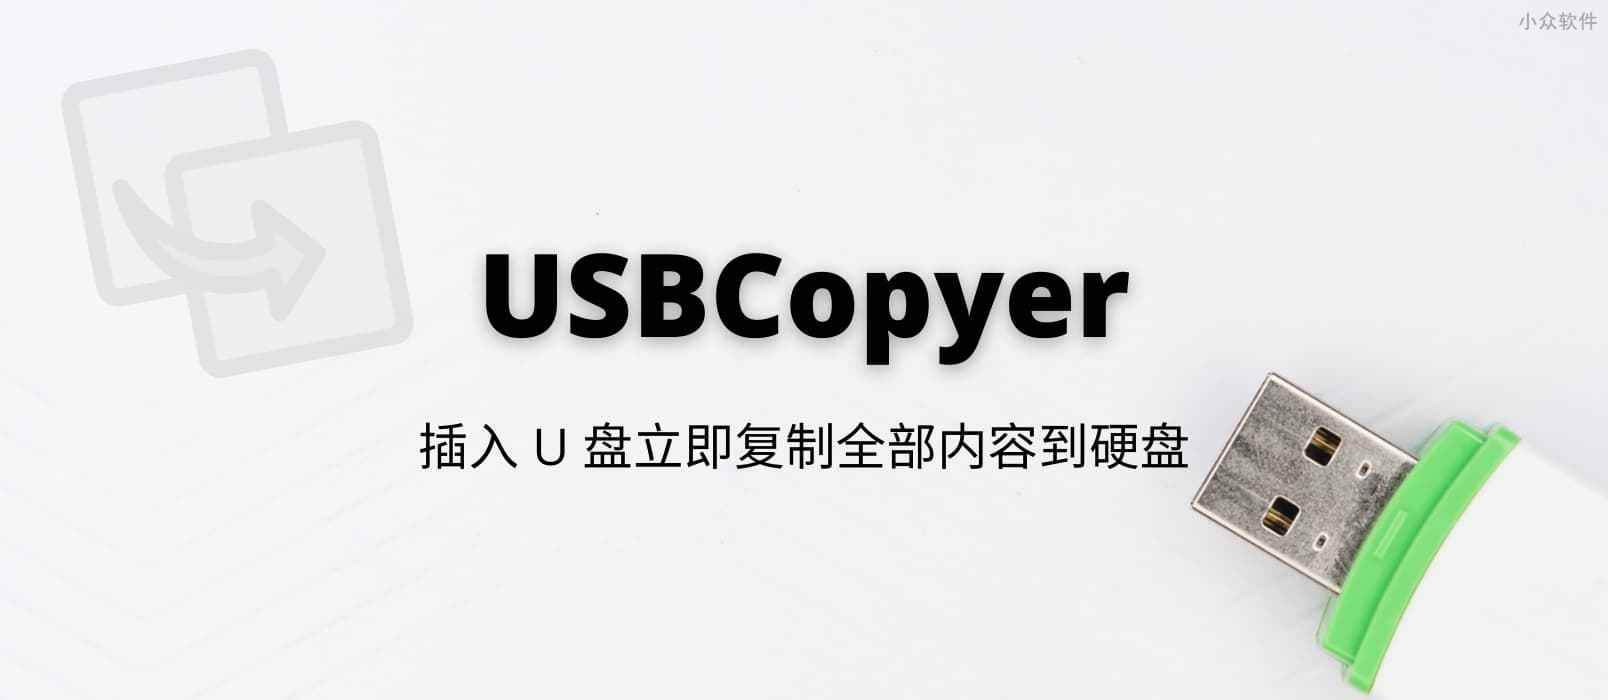 USBCopyer – USB 后台静默拷贝工具，插入 U 盘立即复制全部内容到硬盘[Windows]